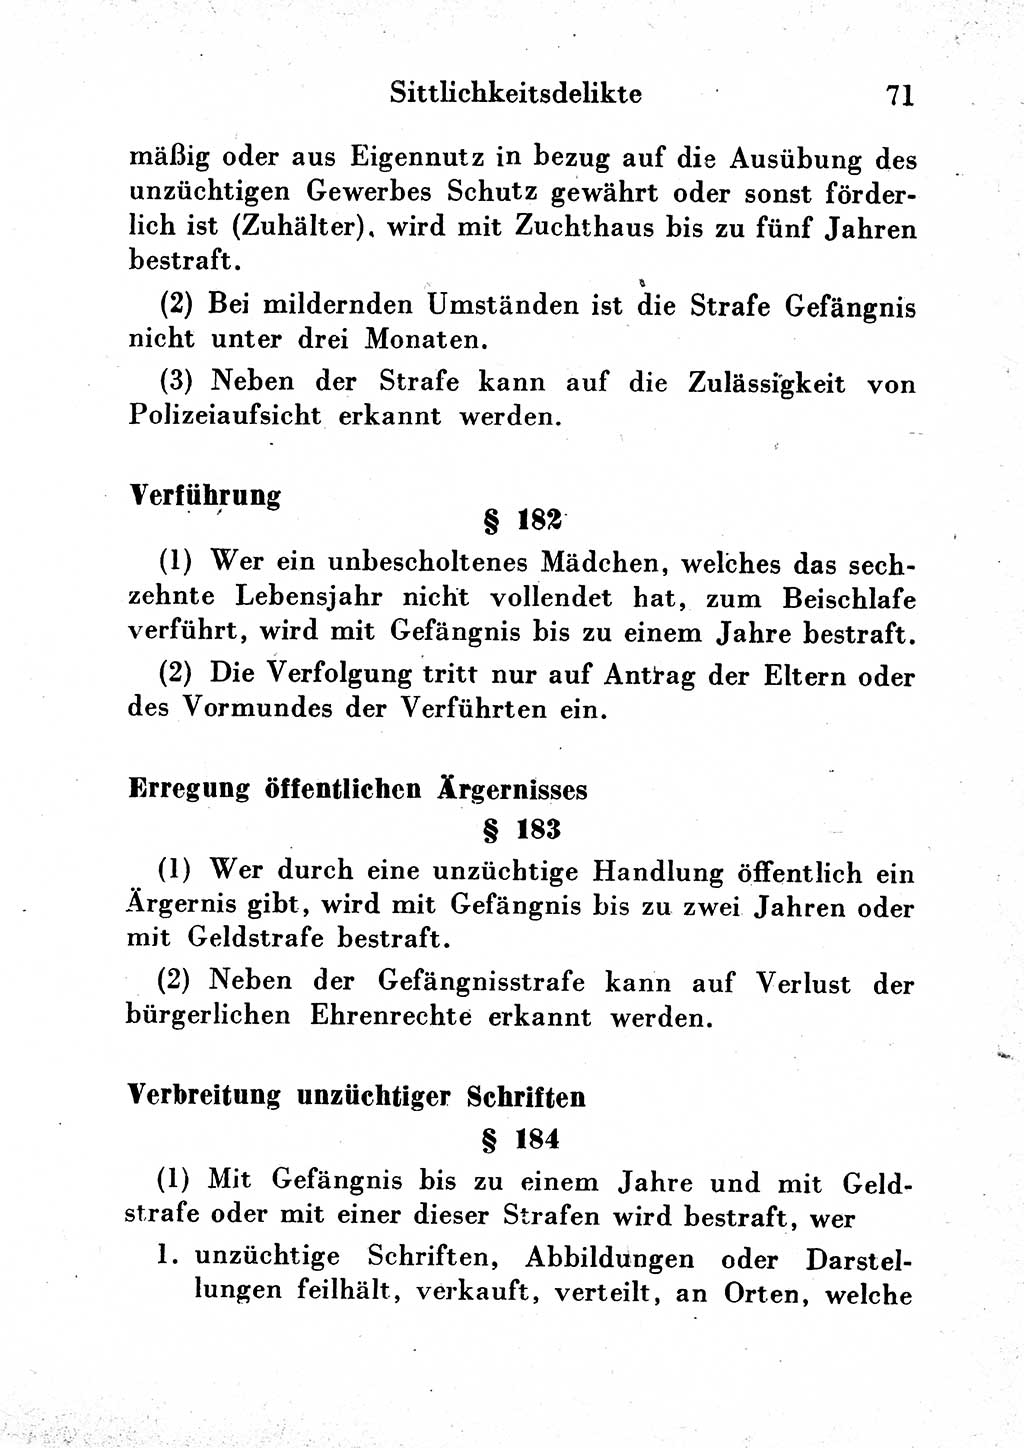 Strafgesetzbuch (StGB) und andere Strafgesetze [Deutsche Demokratische Republik (DDR)] 1954, Seite 71 (StGB Strafges. DDR 1954, S. 71)